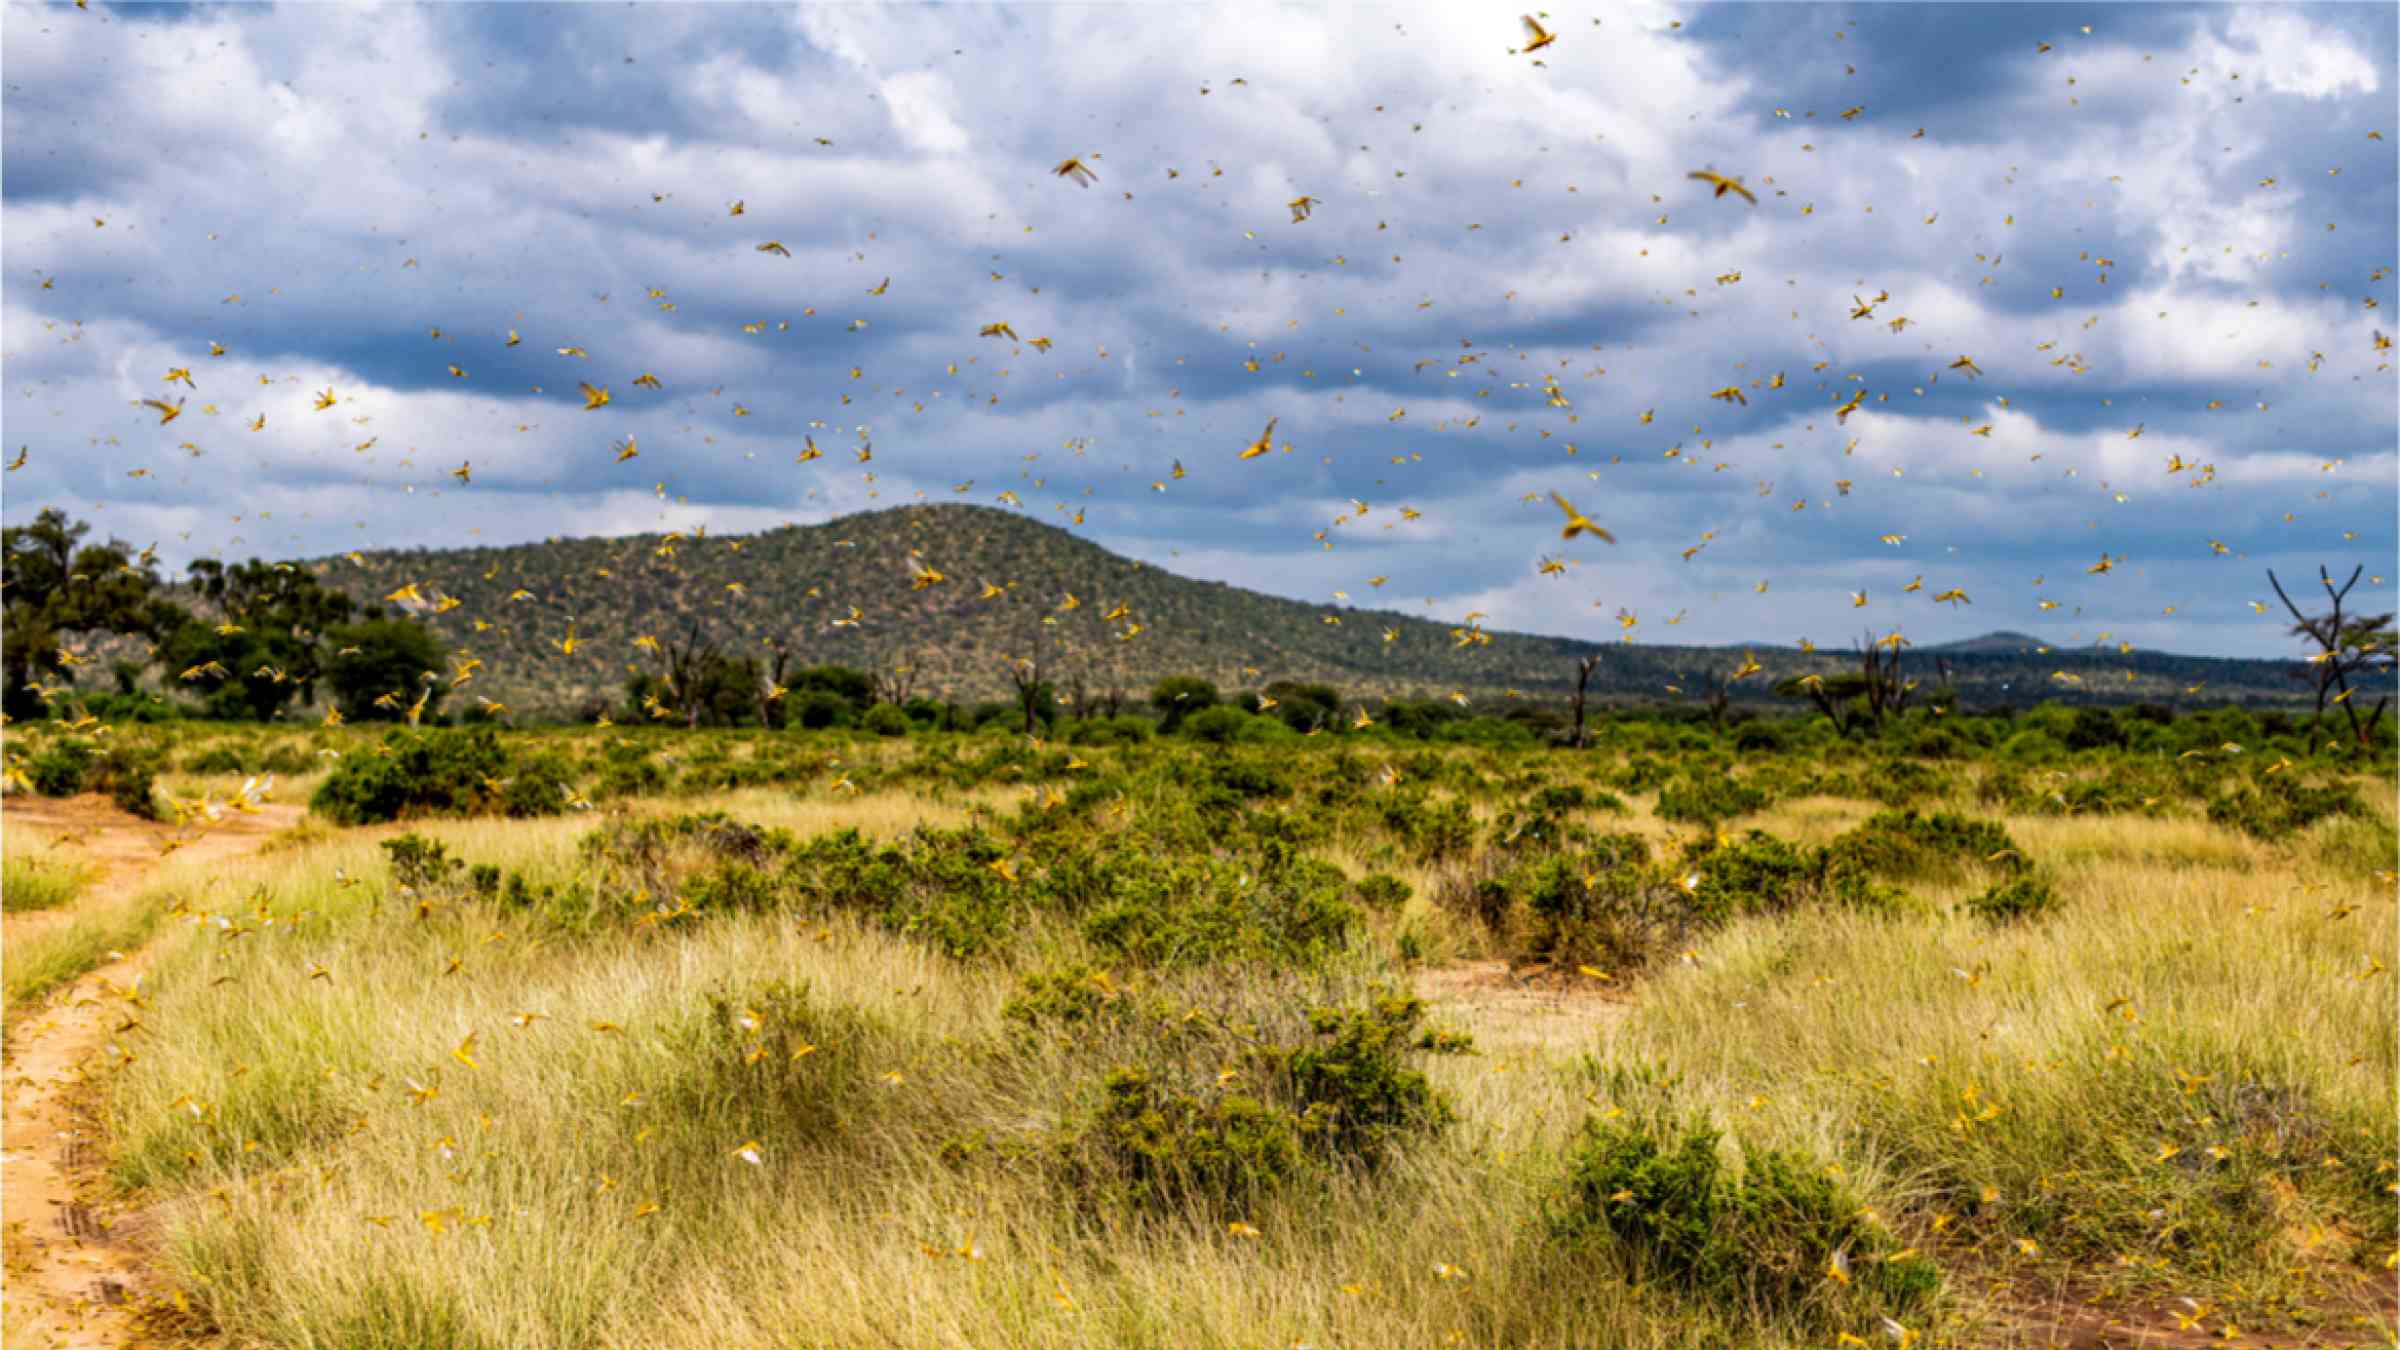 Samburu landscape viewed through swarm of invasive, destructive Desert Locusts. 